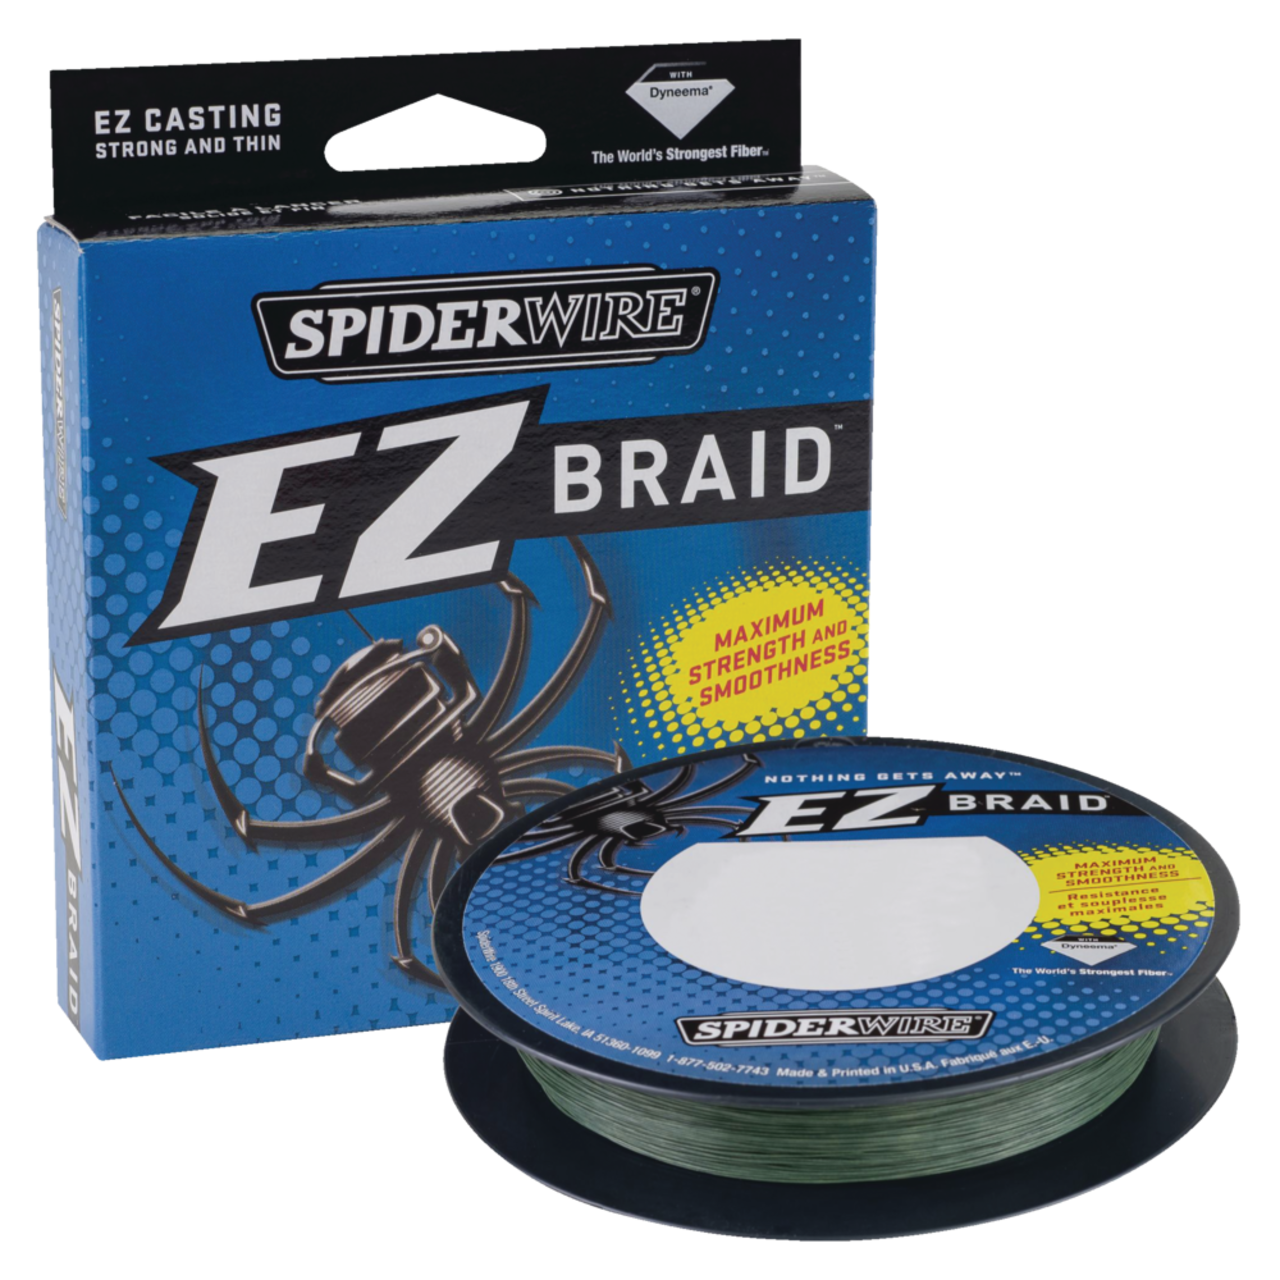 Spiderwire® EZ Braid Fishing Line, Green